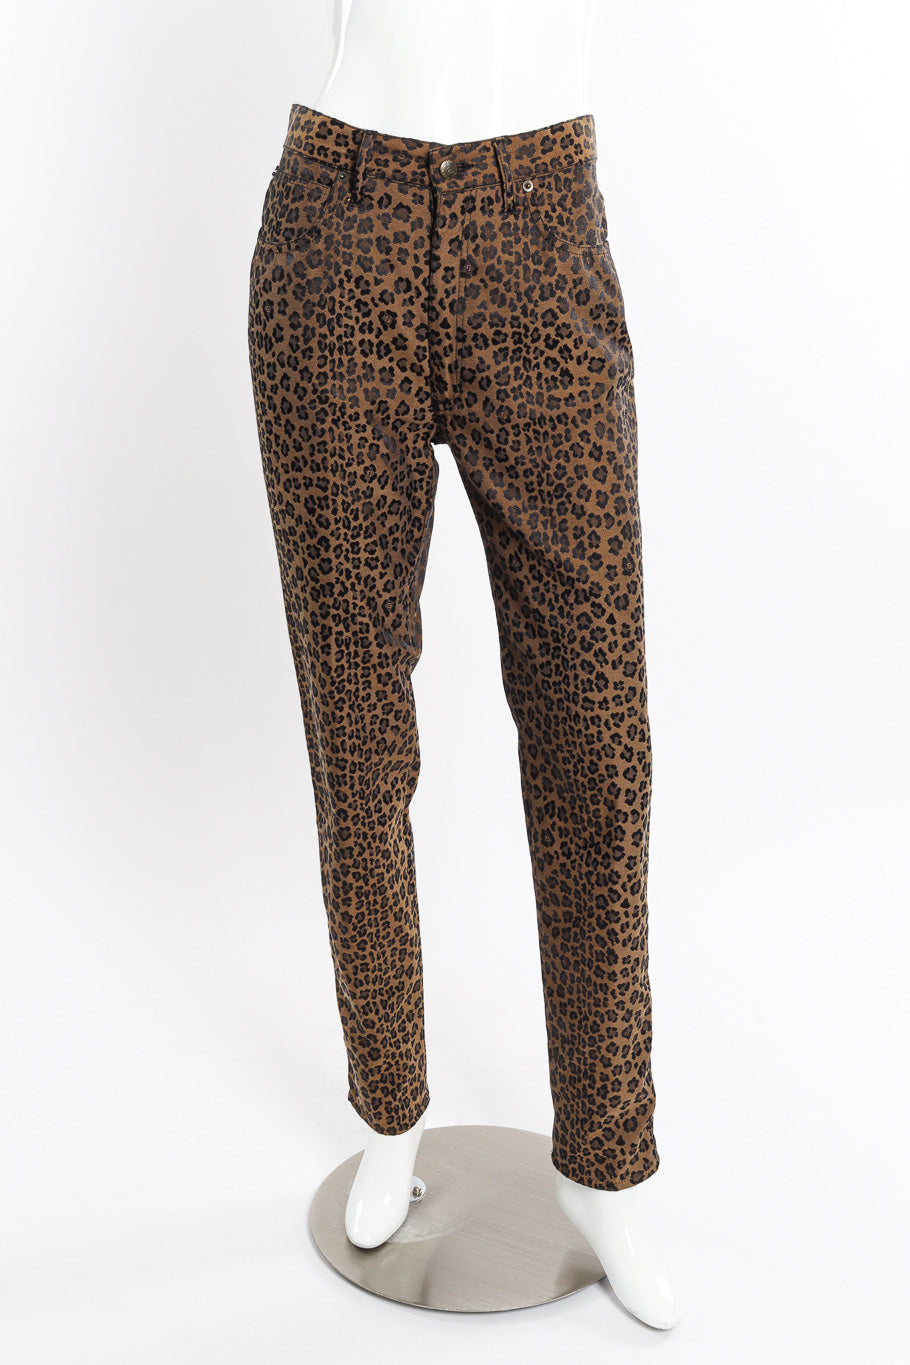 Twill Leopard Jean by Fendi on mannequin @recessla